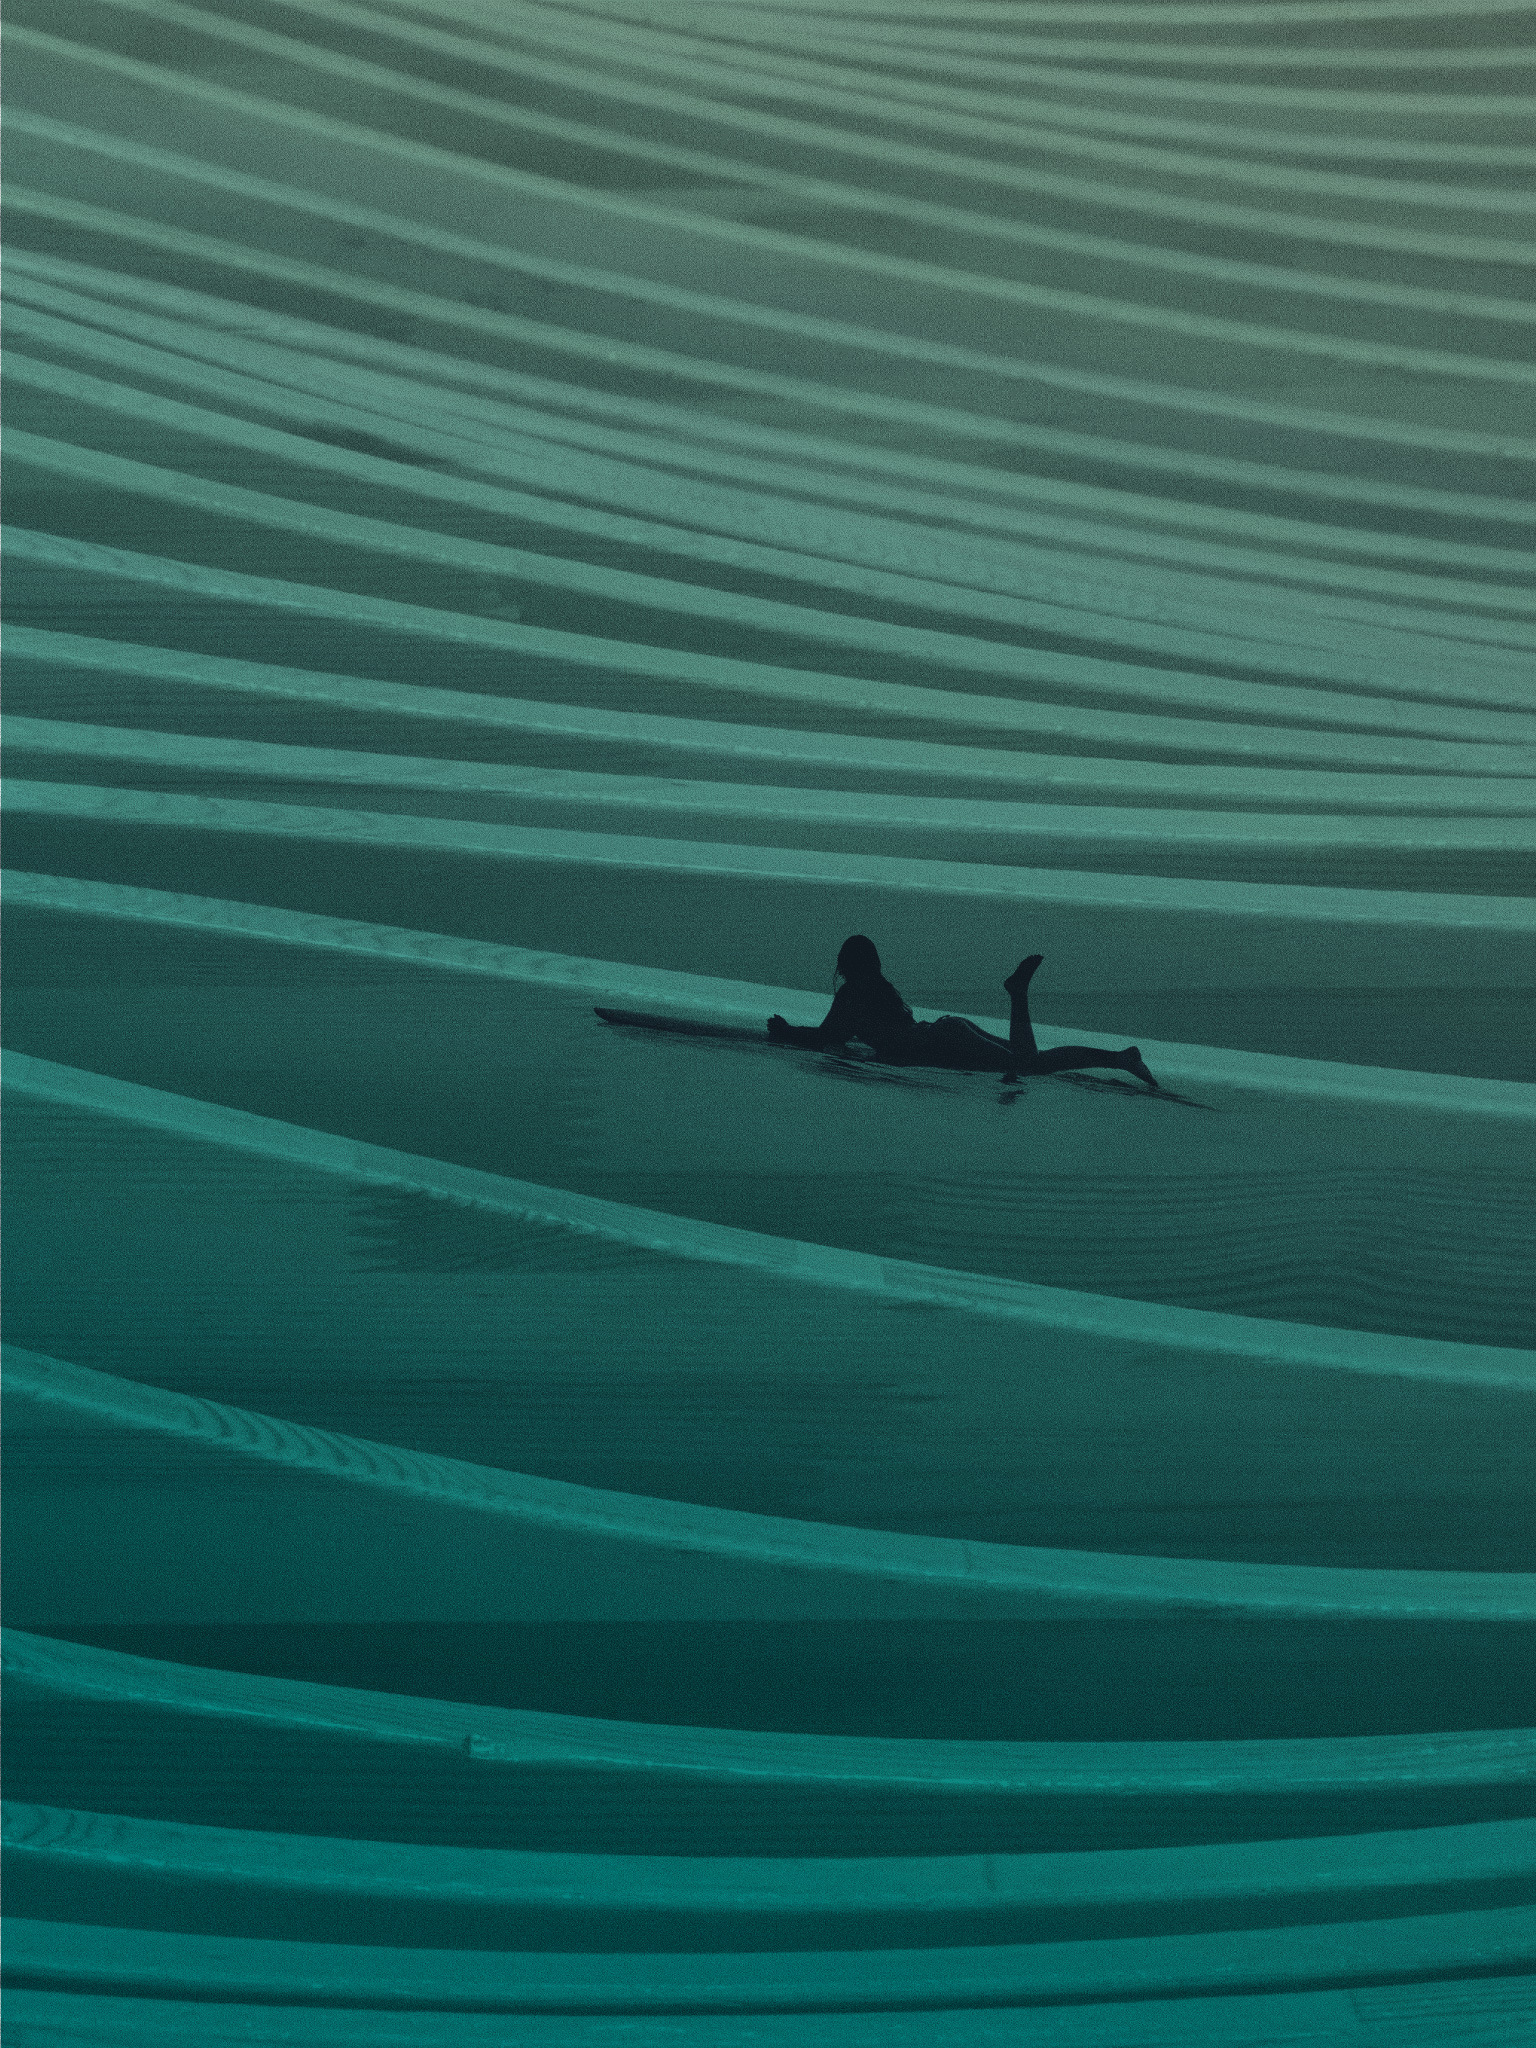 Illustration of surfer on waves.